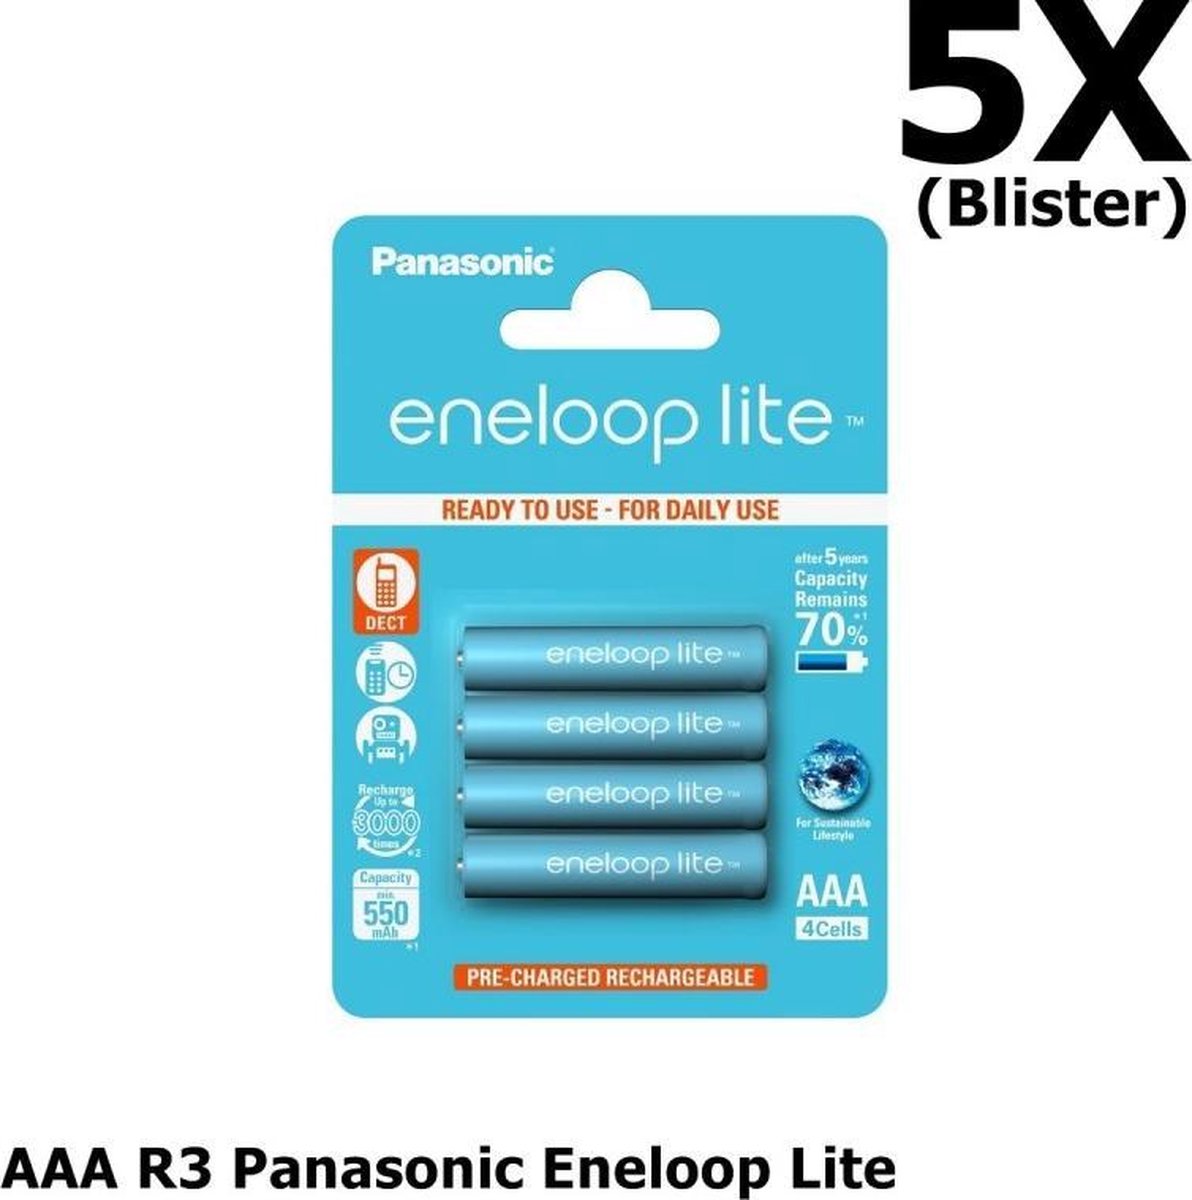 20 Stuks (5 Blisters a 4st) - AAA R3 Panasonic Eneloop Lite 1.2V 550mAh Oplaadbare Batterijen - Speciaal voor dect telefoons, Tot 3000 laadcycli - Blisterverpakking